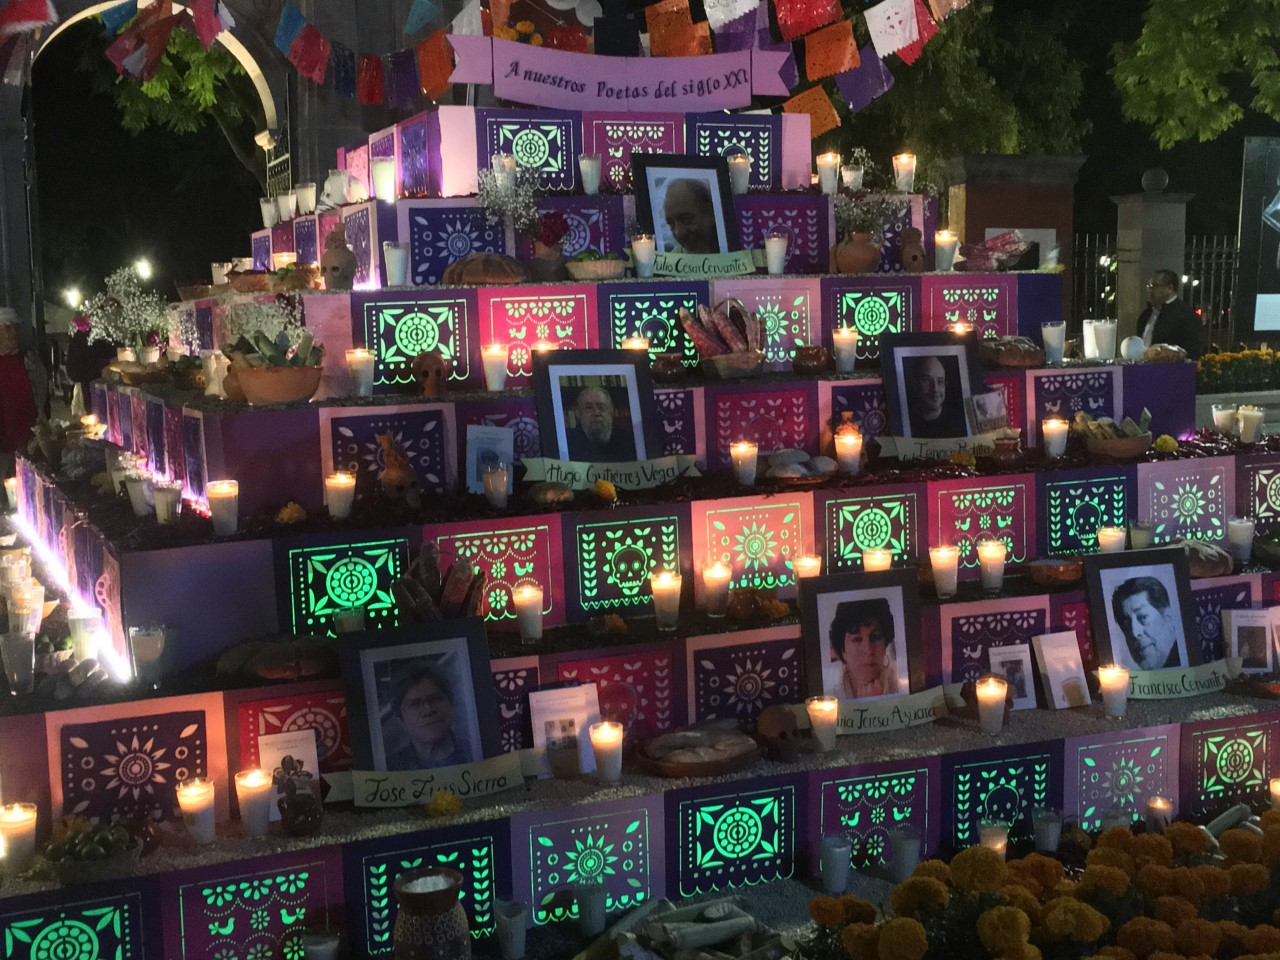  Poetas queretanos son recordados en altar monumental de Municipio de Querétaro